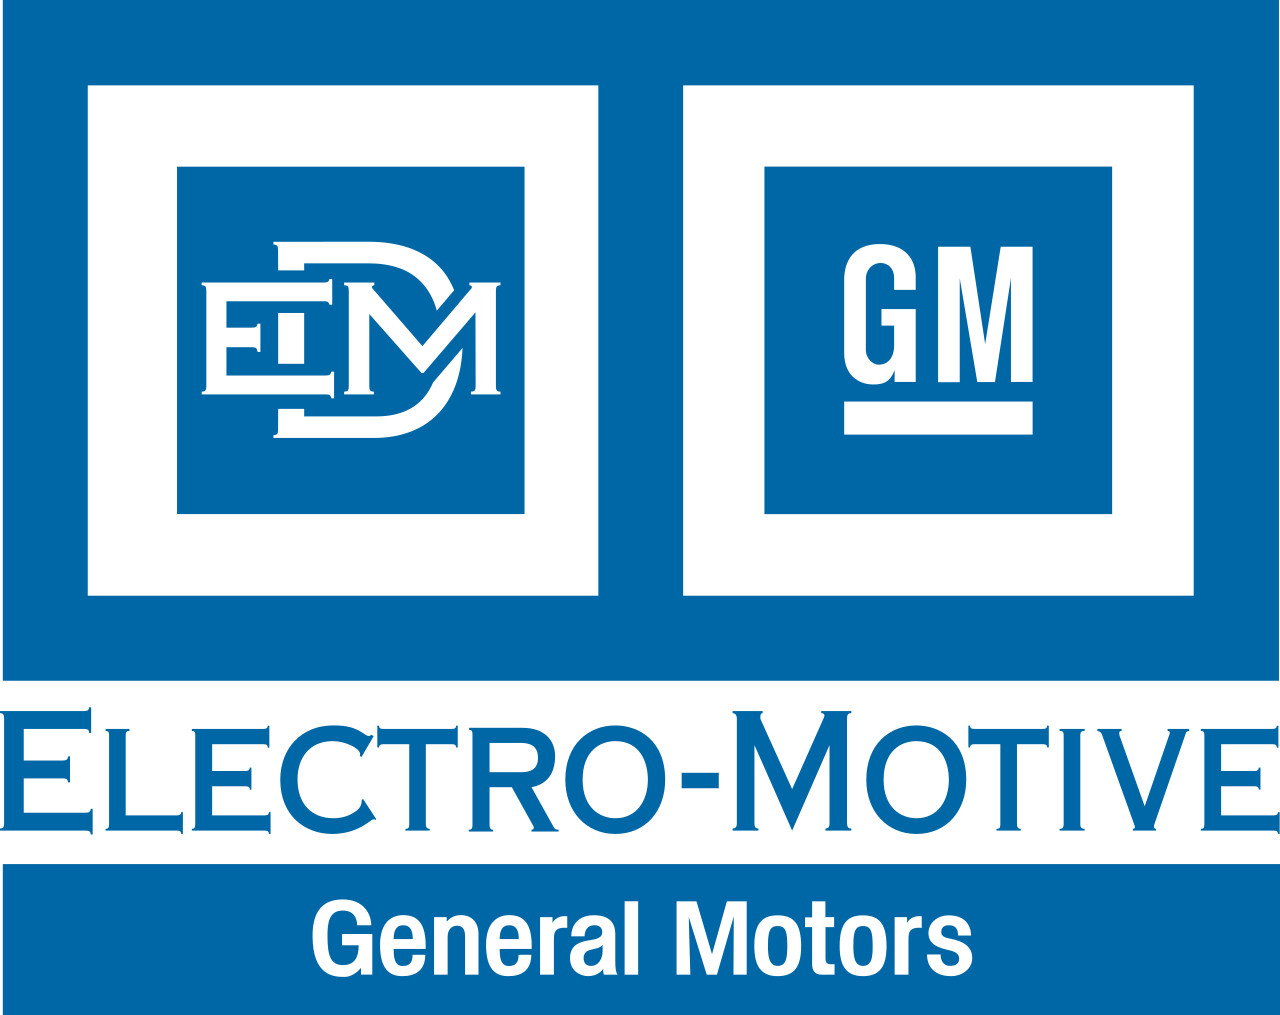 GM Logo PNG File